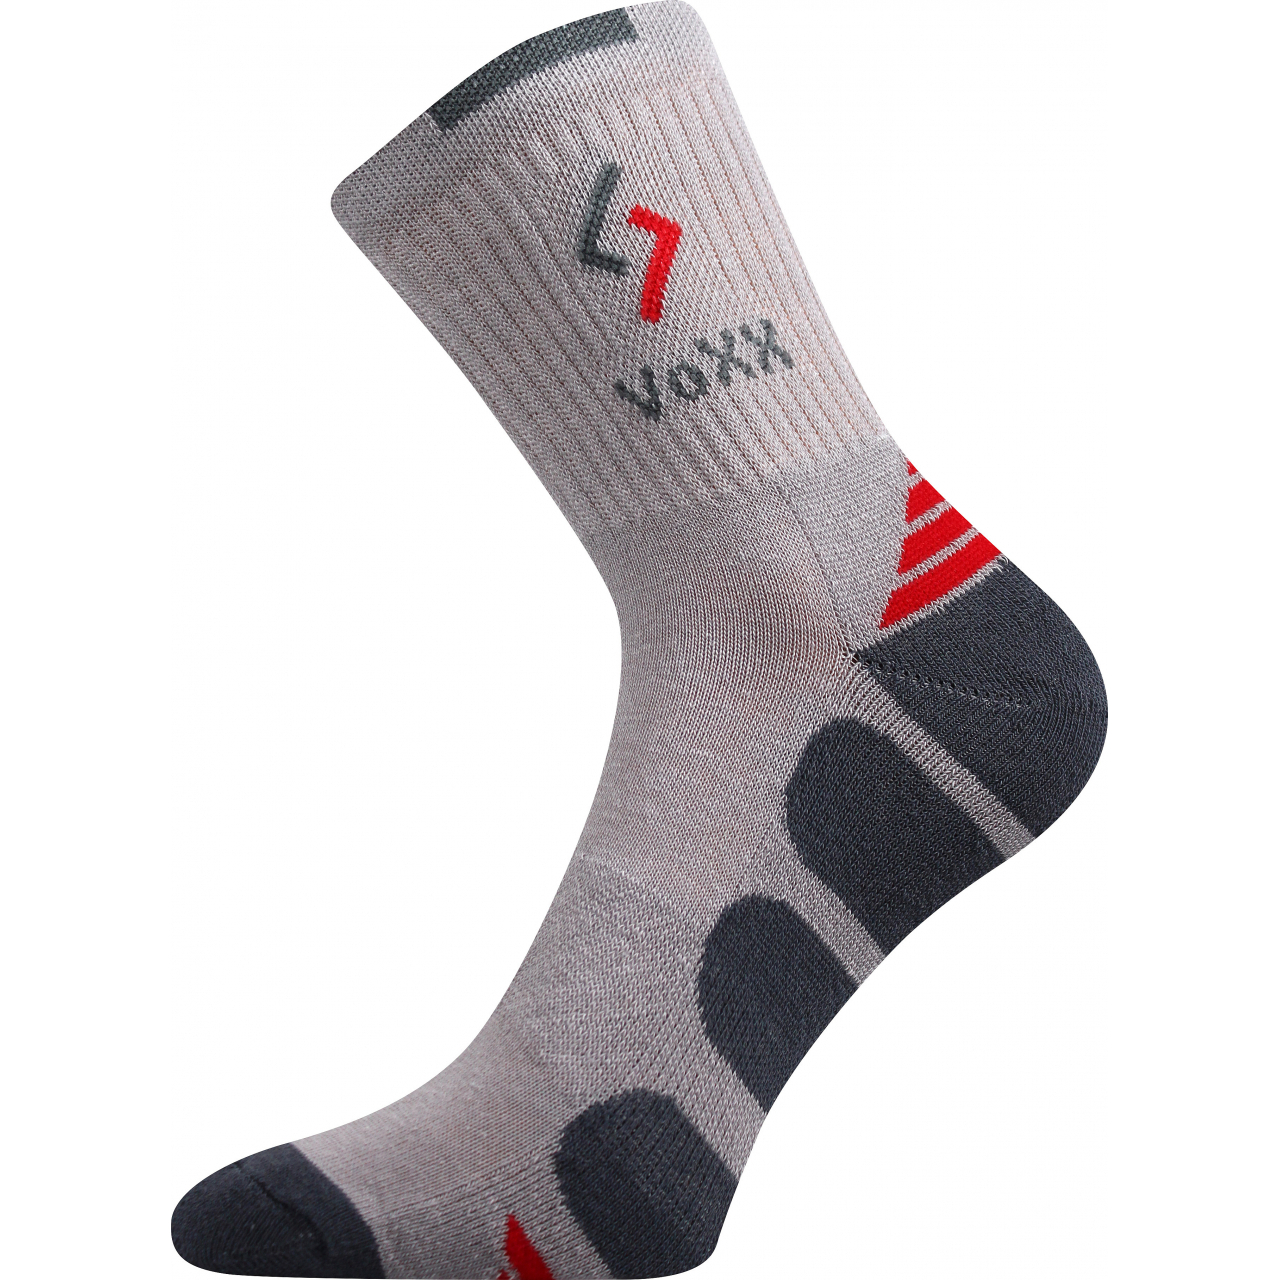 Ponožky sportovní Voxx Tronic - světle šedé-černé, 43-46